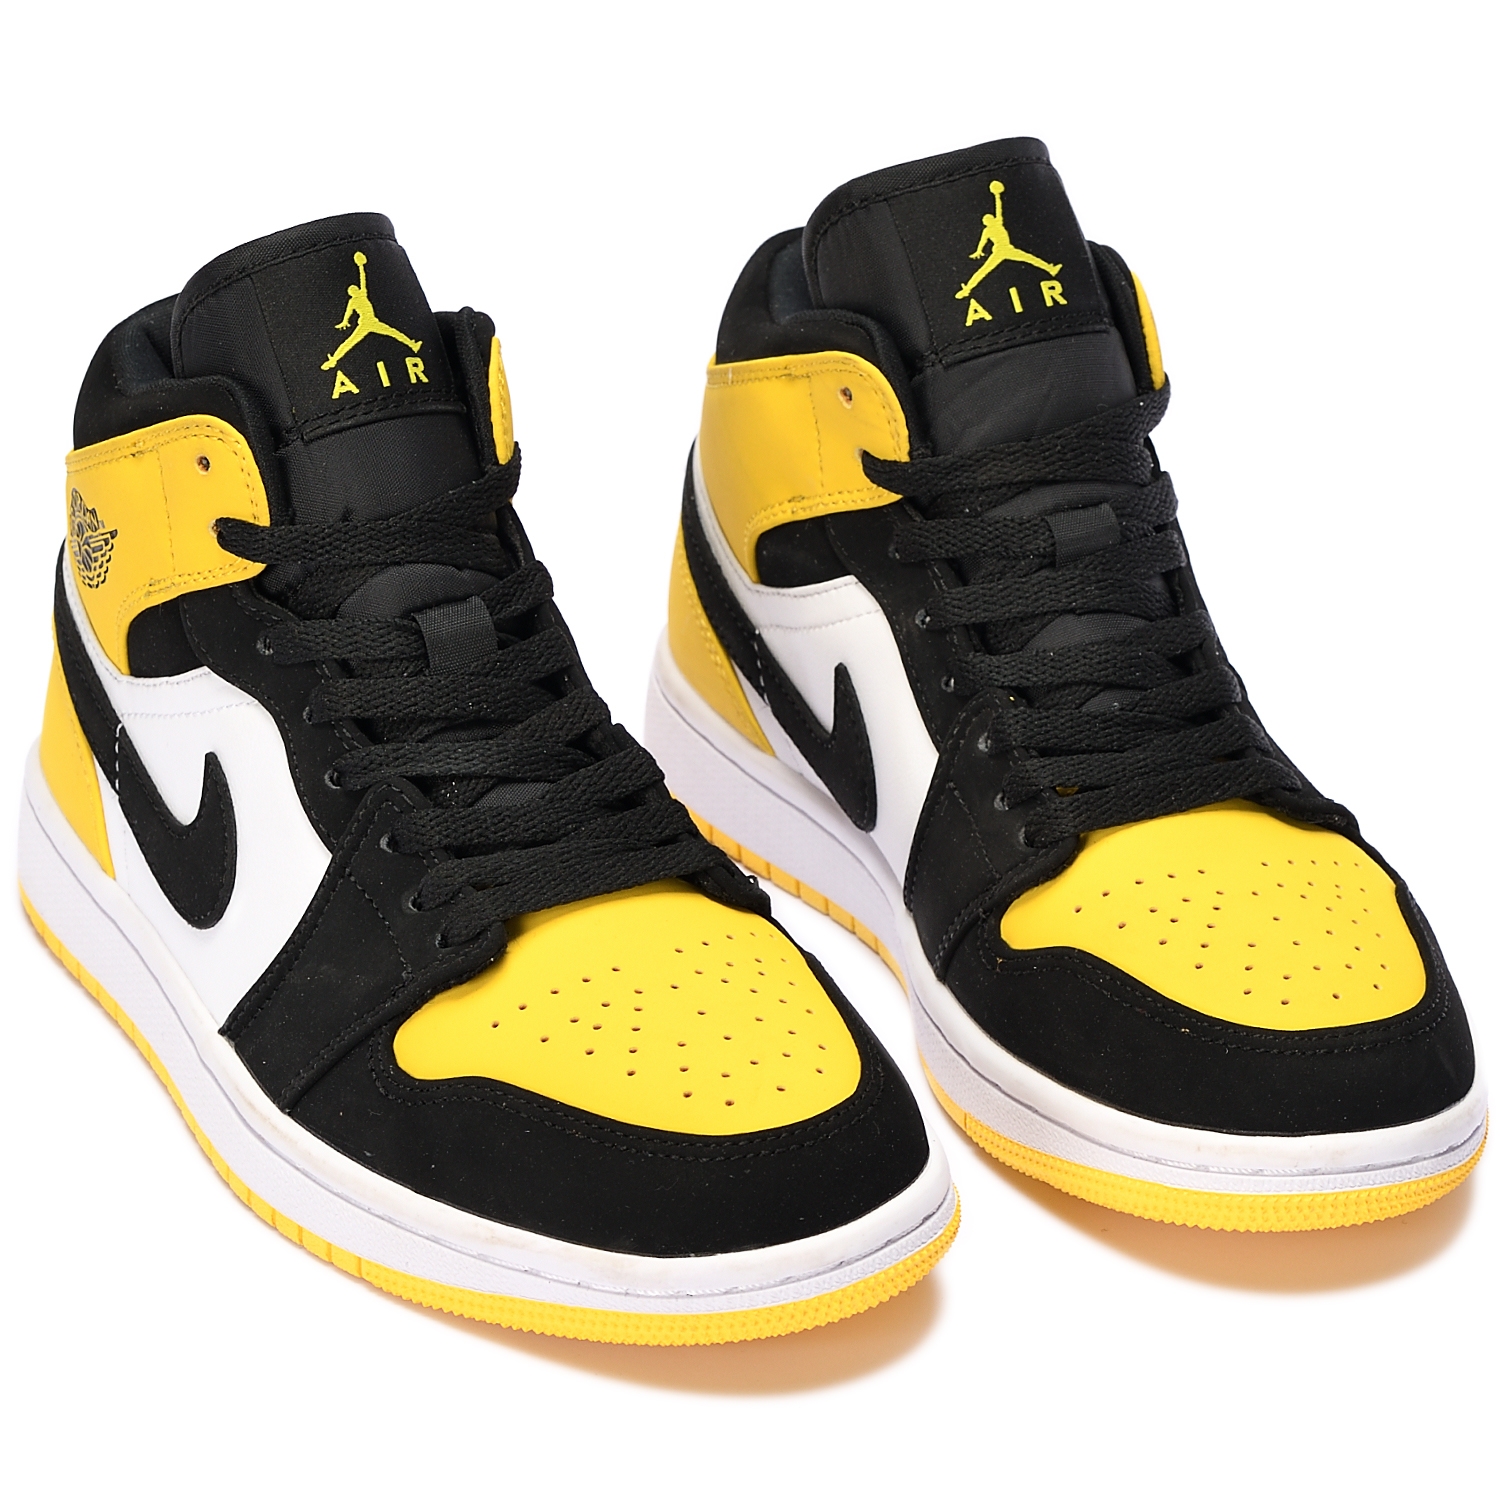 Air Jordan 1 Mid SE "Yellow Toe"